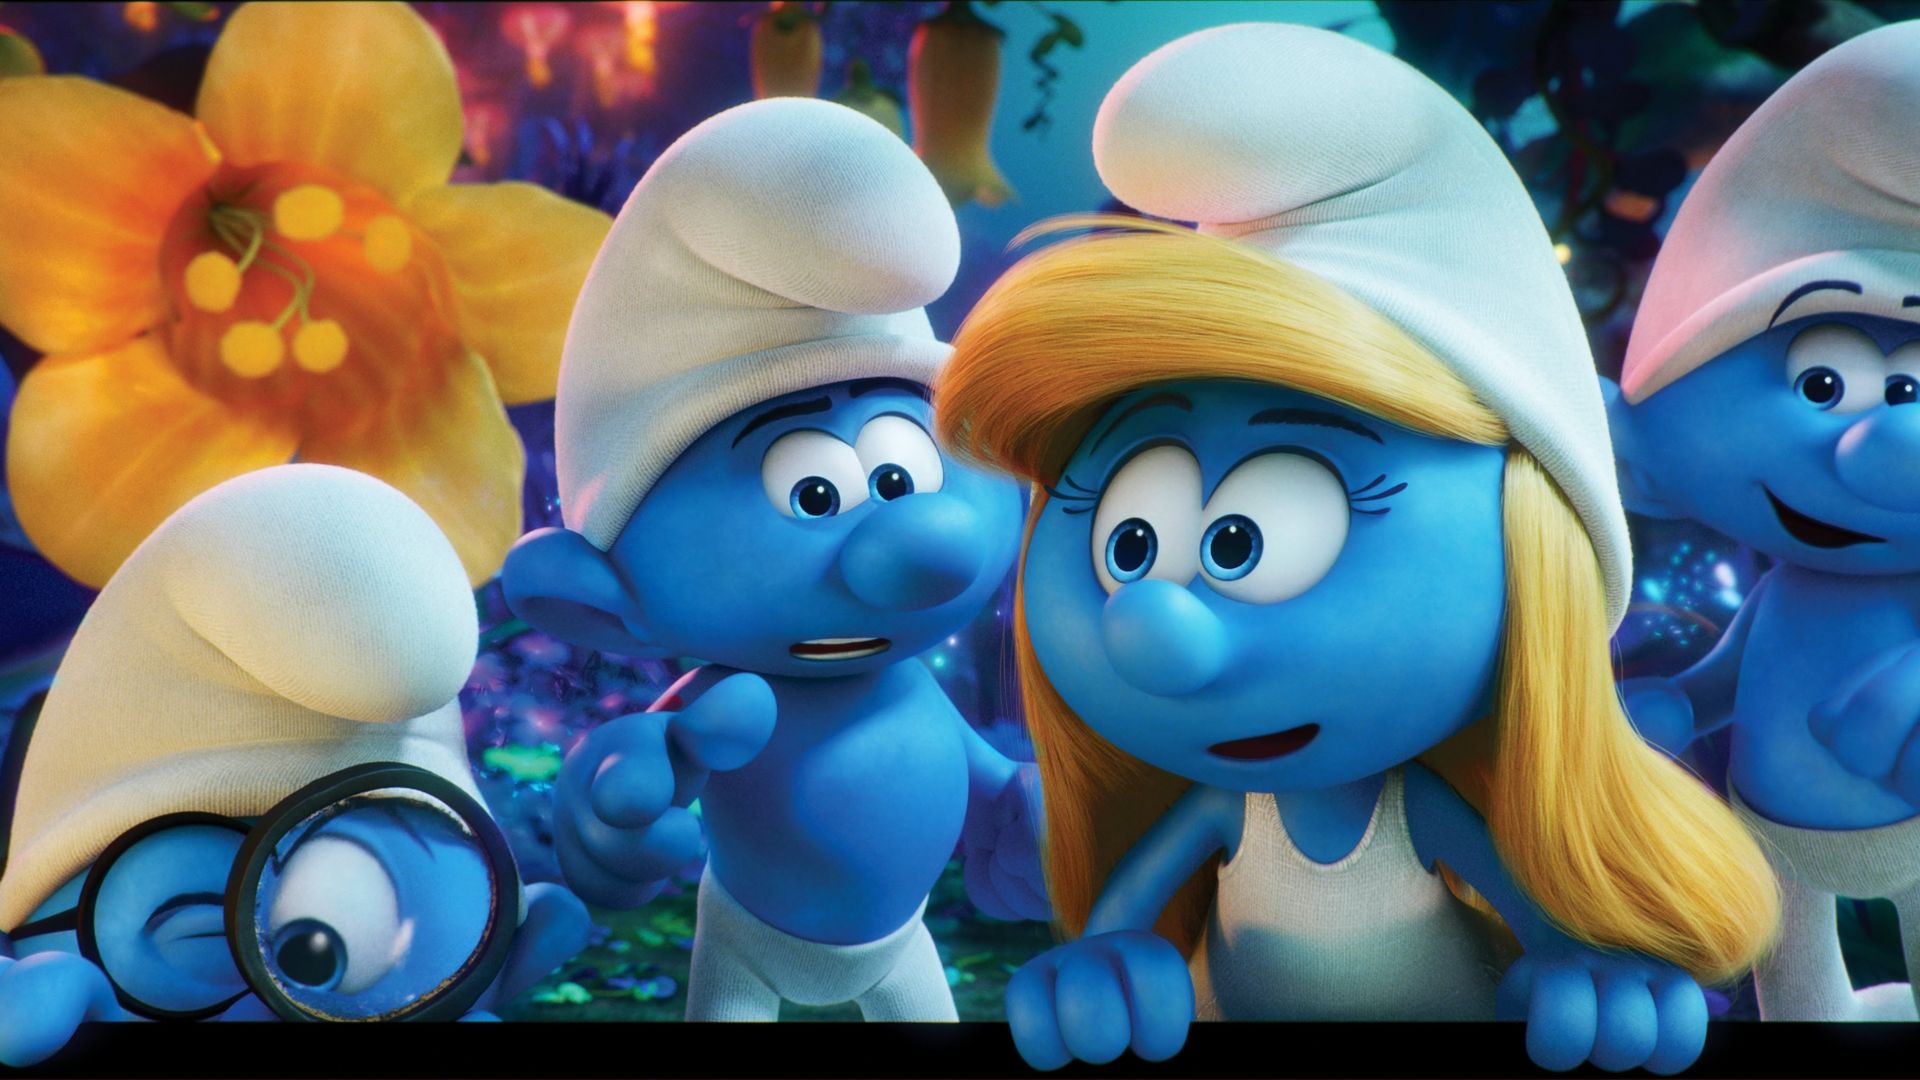 Смурфы 3, смурфики, Лучшие мультфильмы 2017, Get Smurfy, Best Animation Movies of 2017, blue (horizontal)